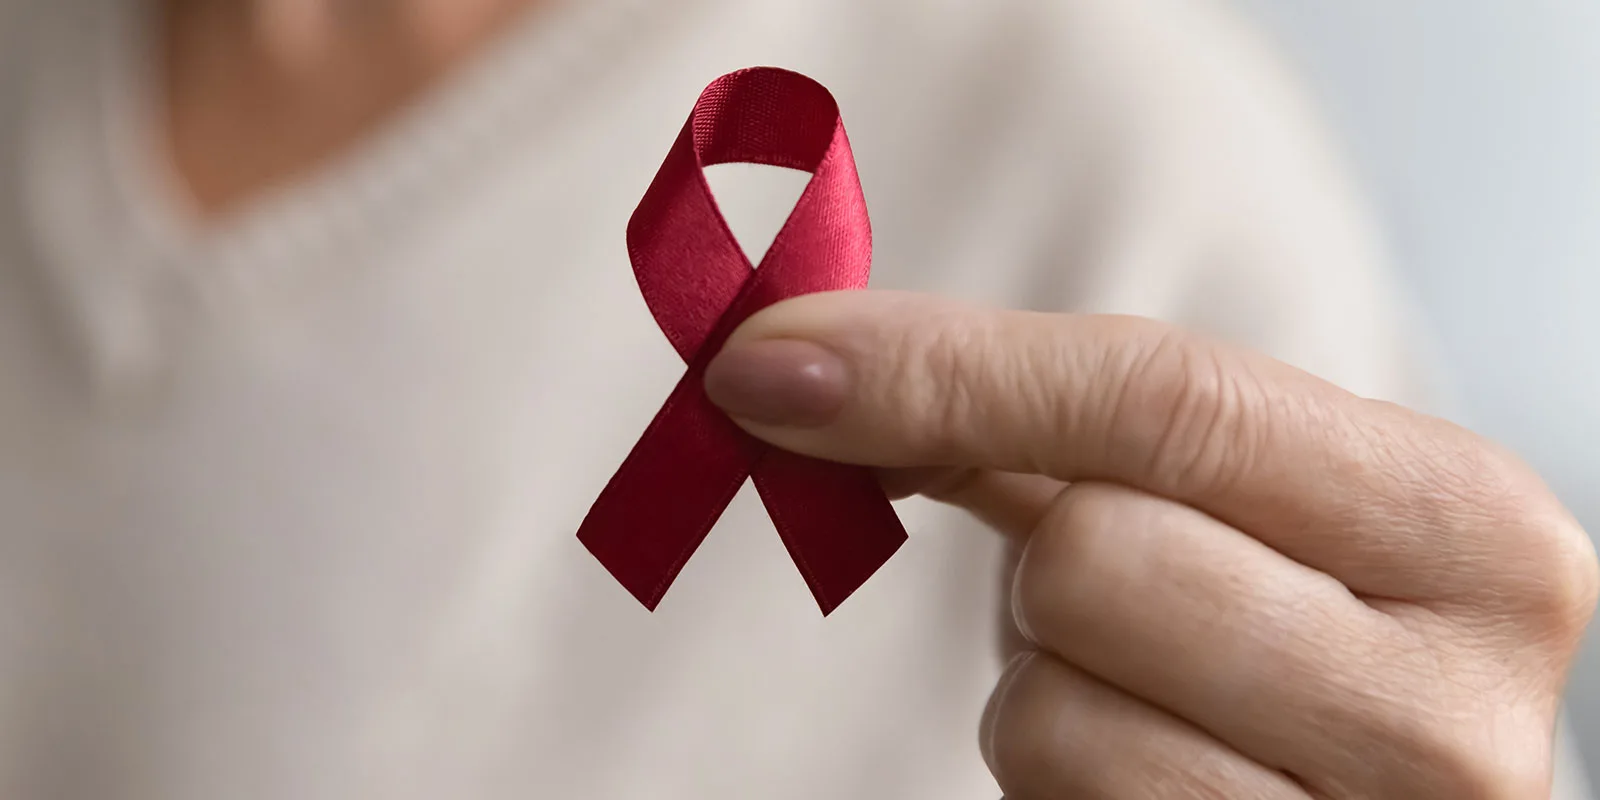 RKI: Leichter Anstieg bei HIV-Neuinfektionen unter schwulen und bisexuellen Männern